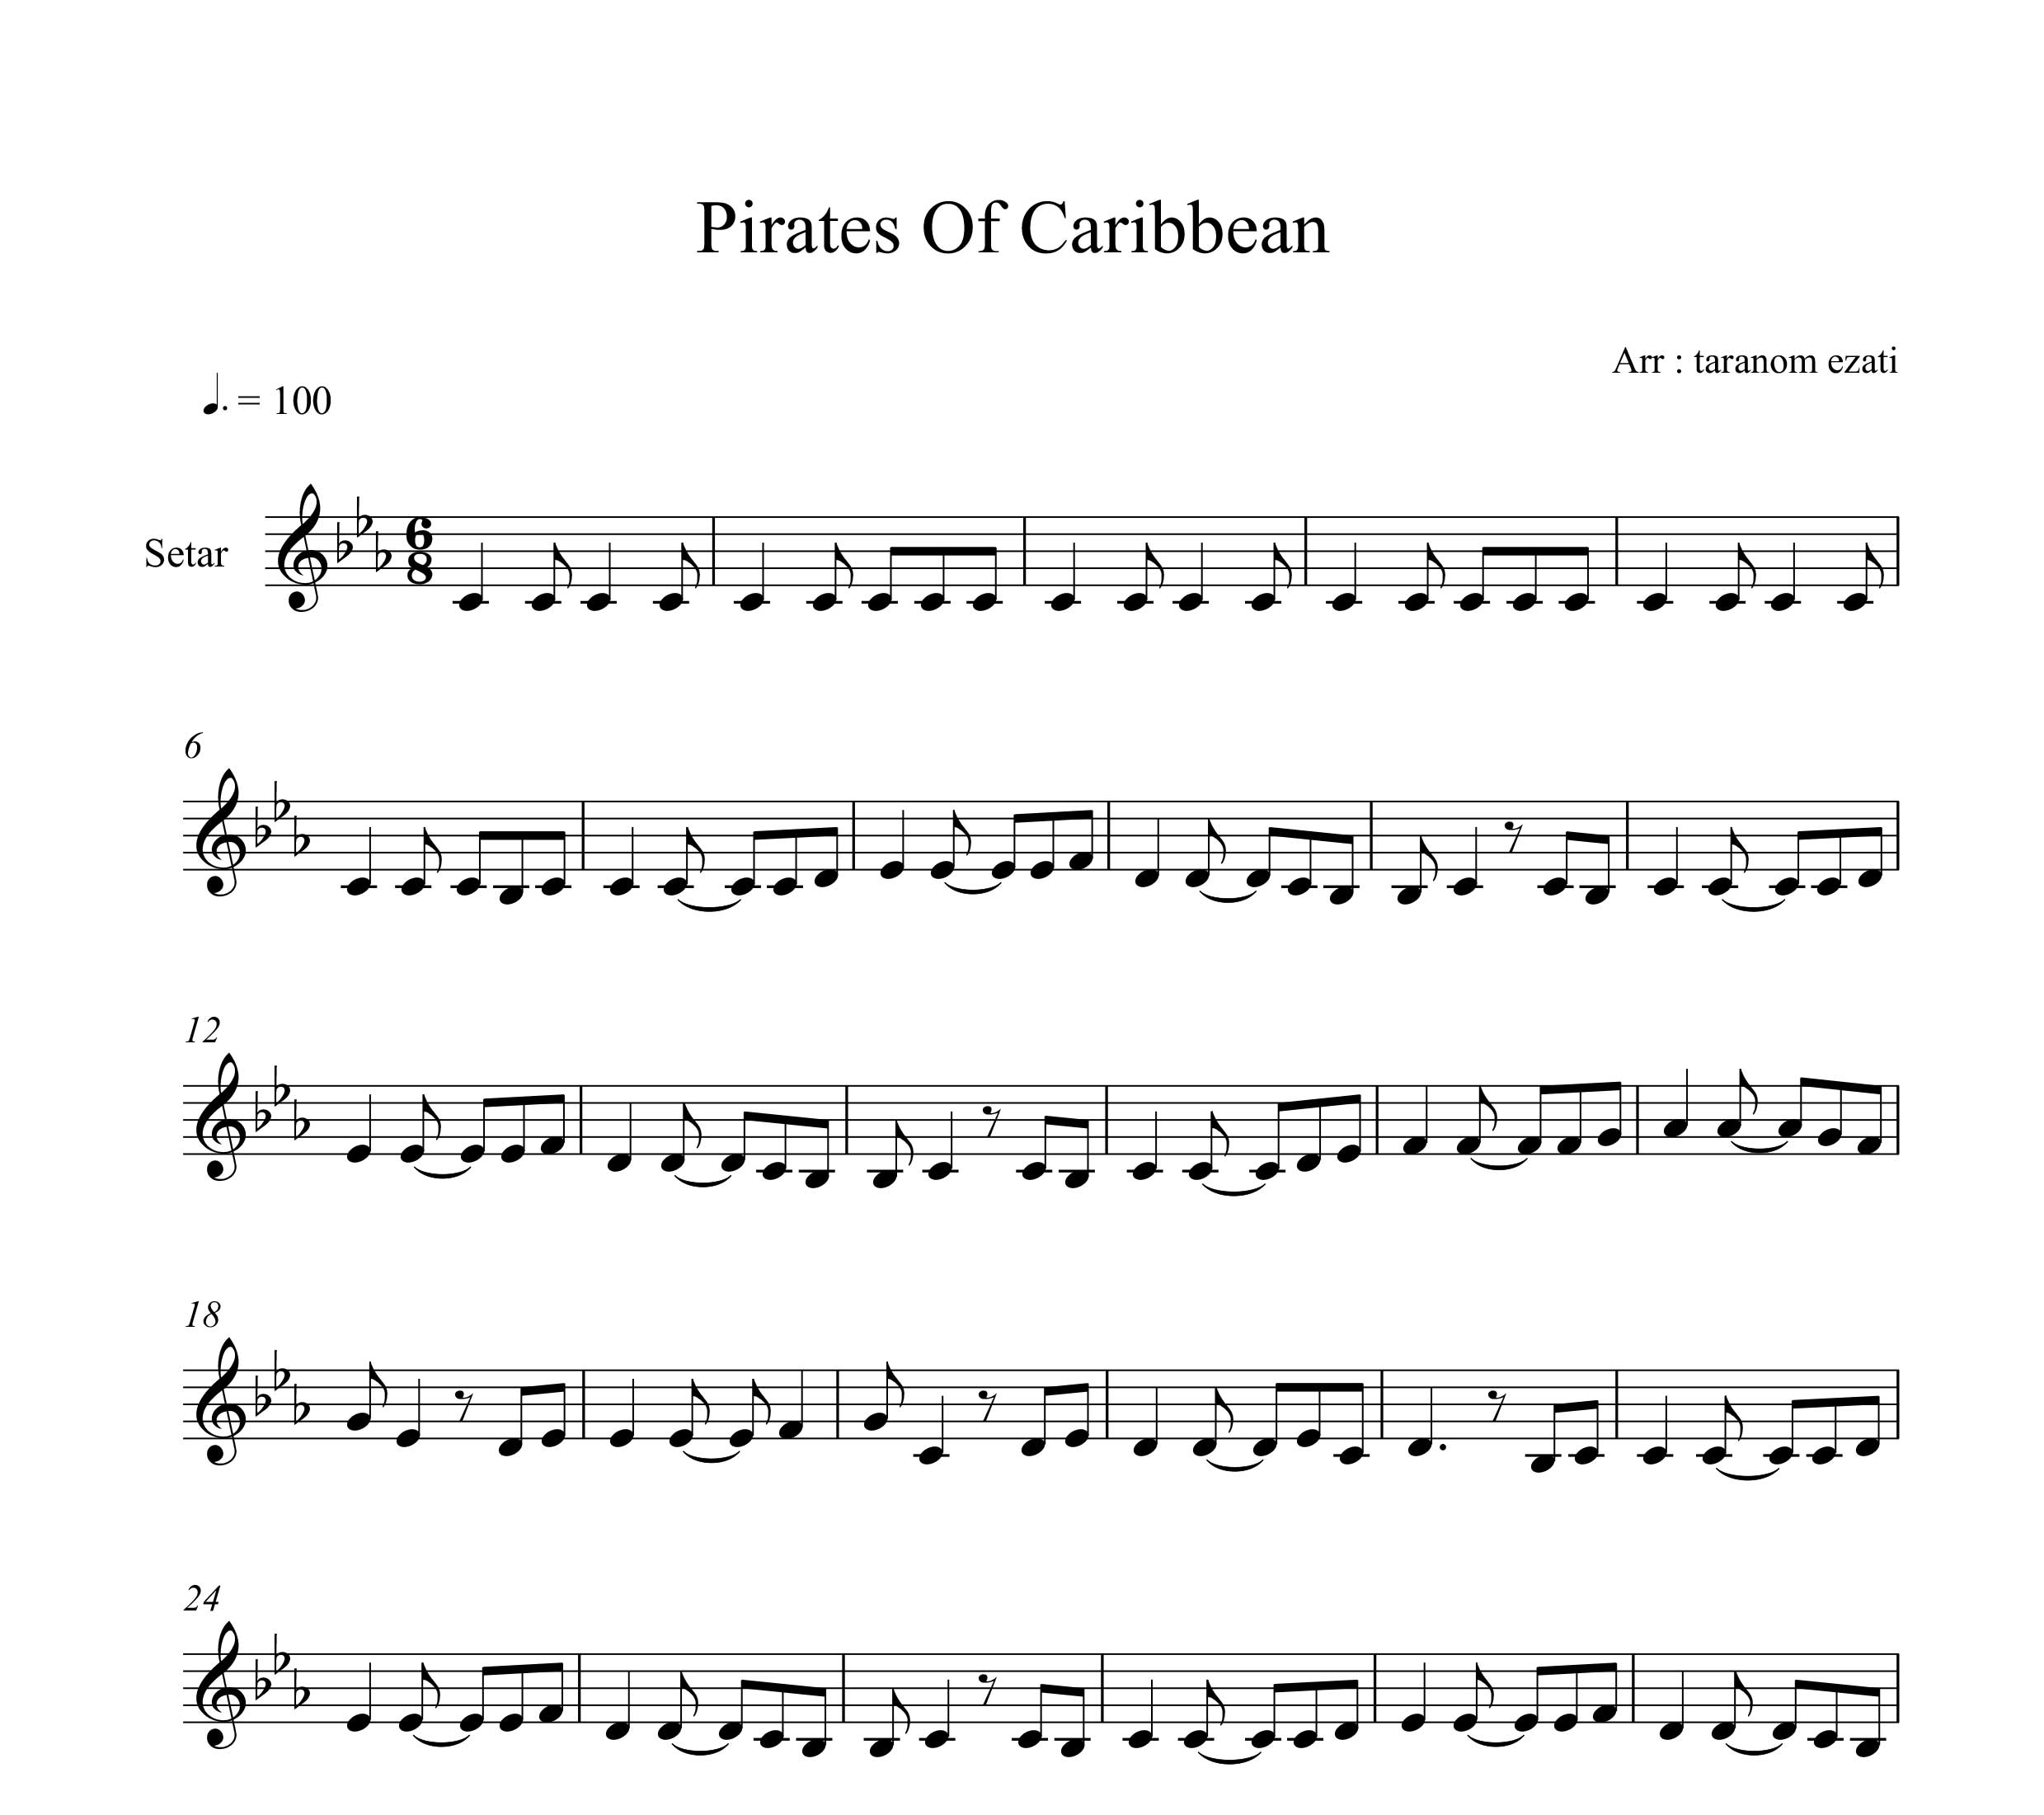 نت سه تار دزدان دریایی کارائیب pirates of the caribbean